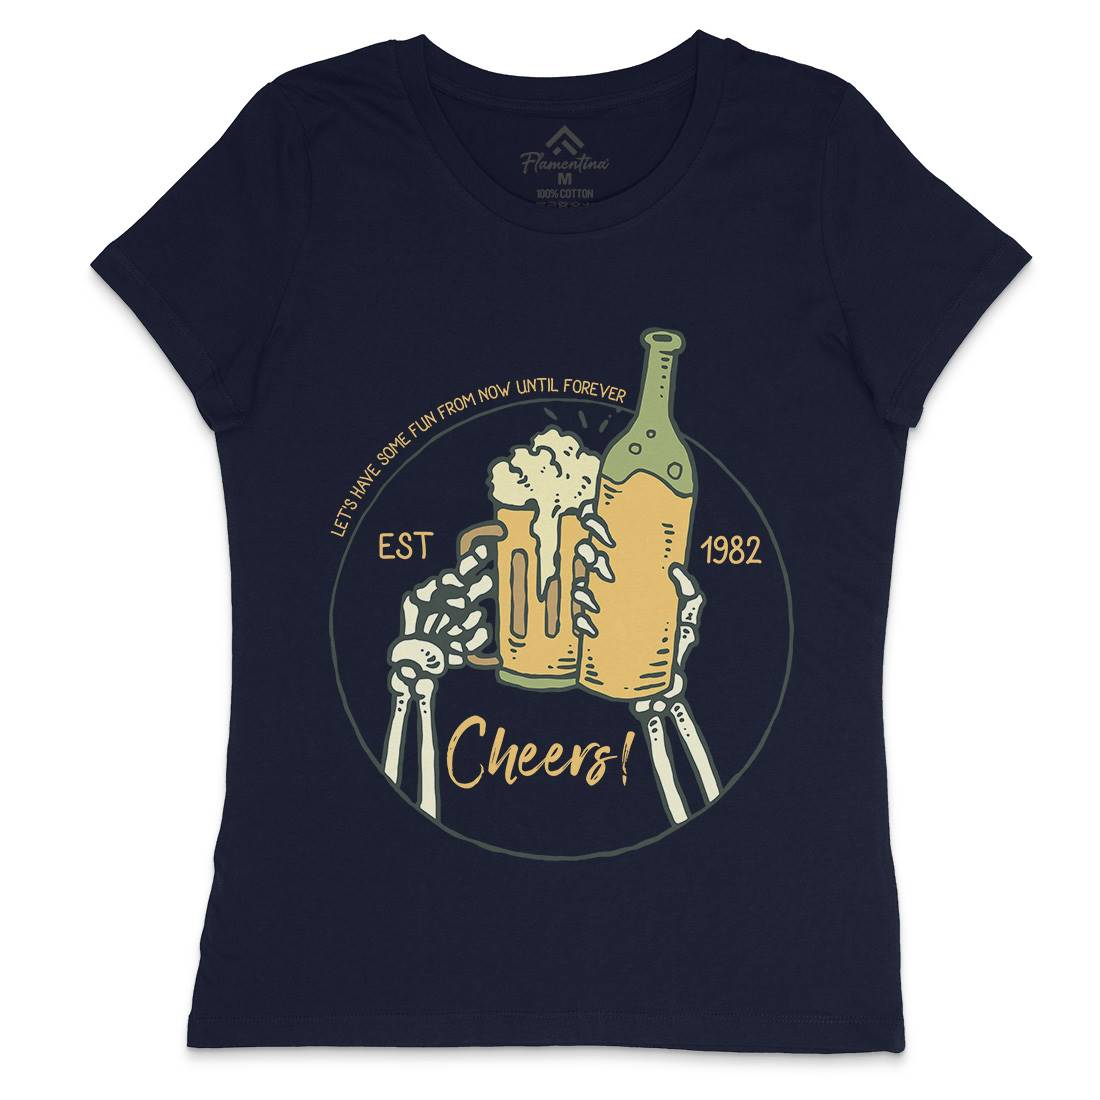 Cheers Womens Crew Neck T-Shirt Drinks C715